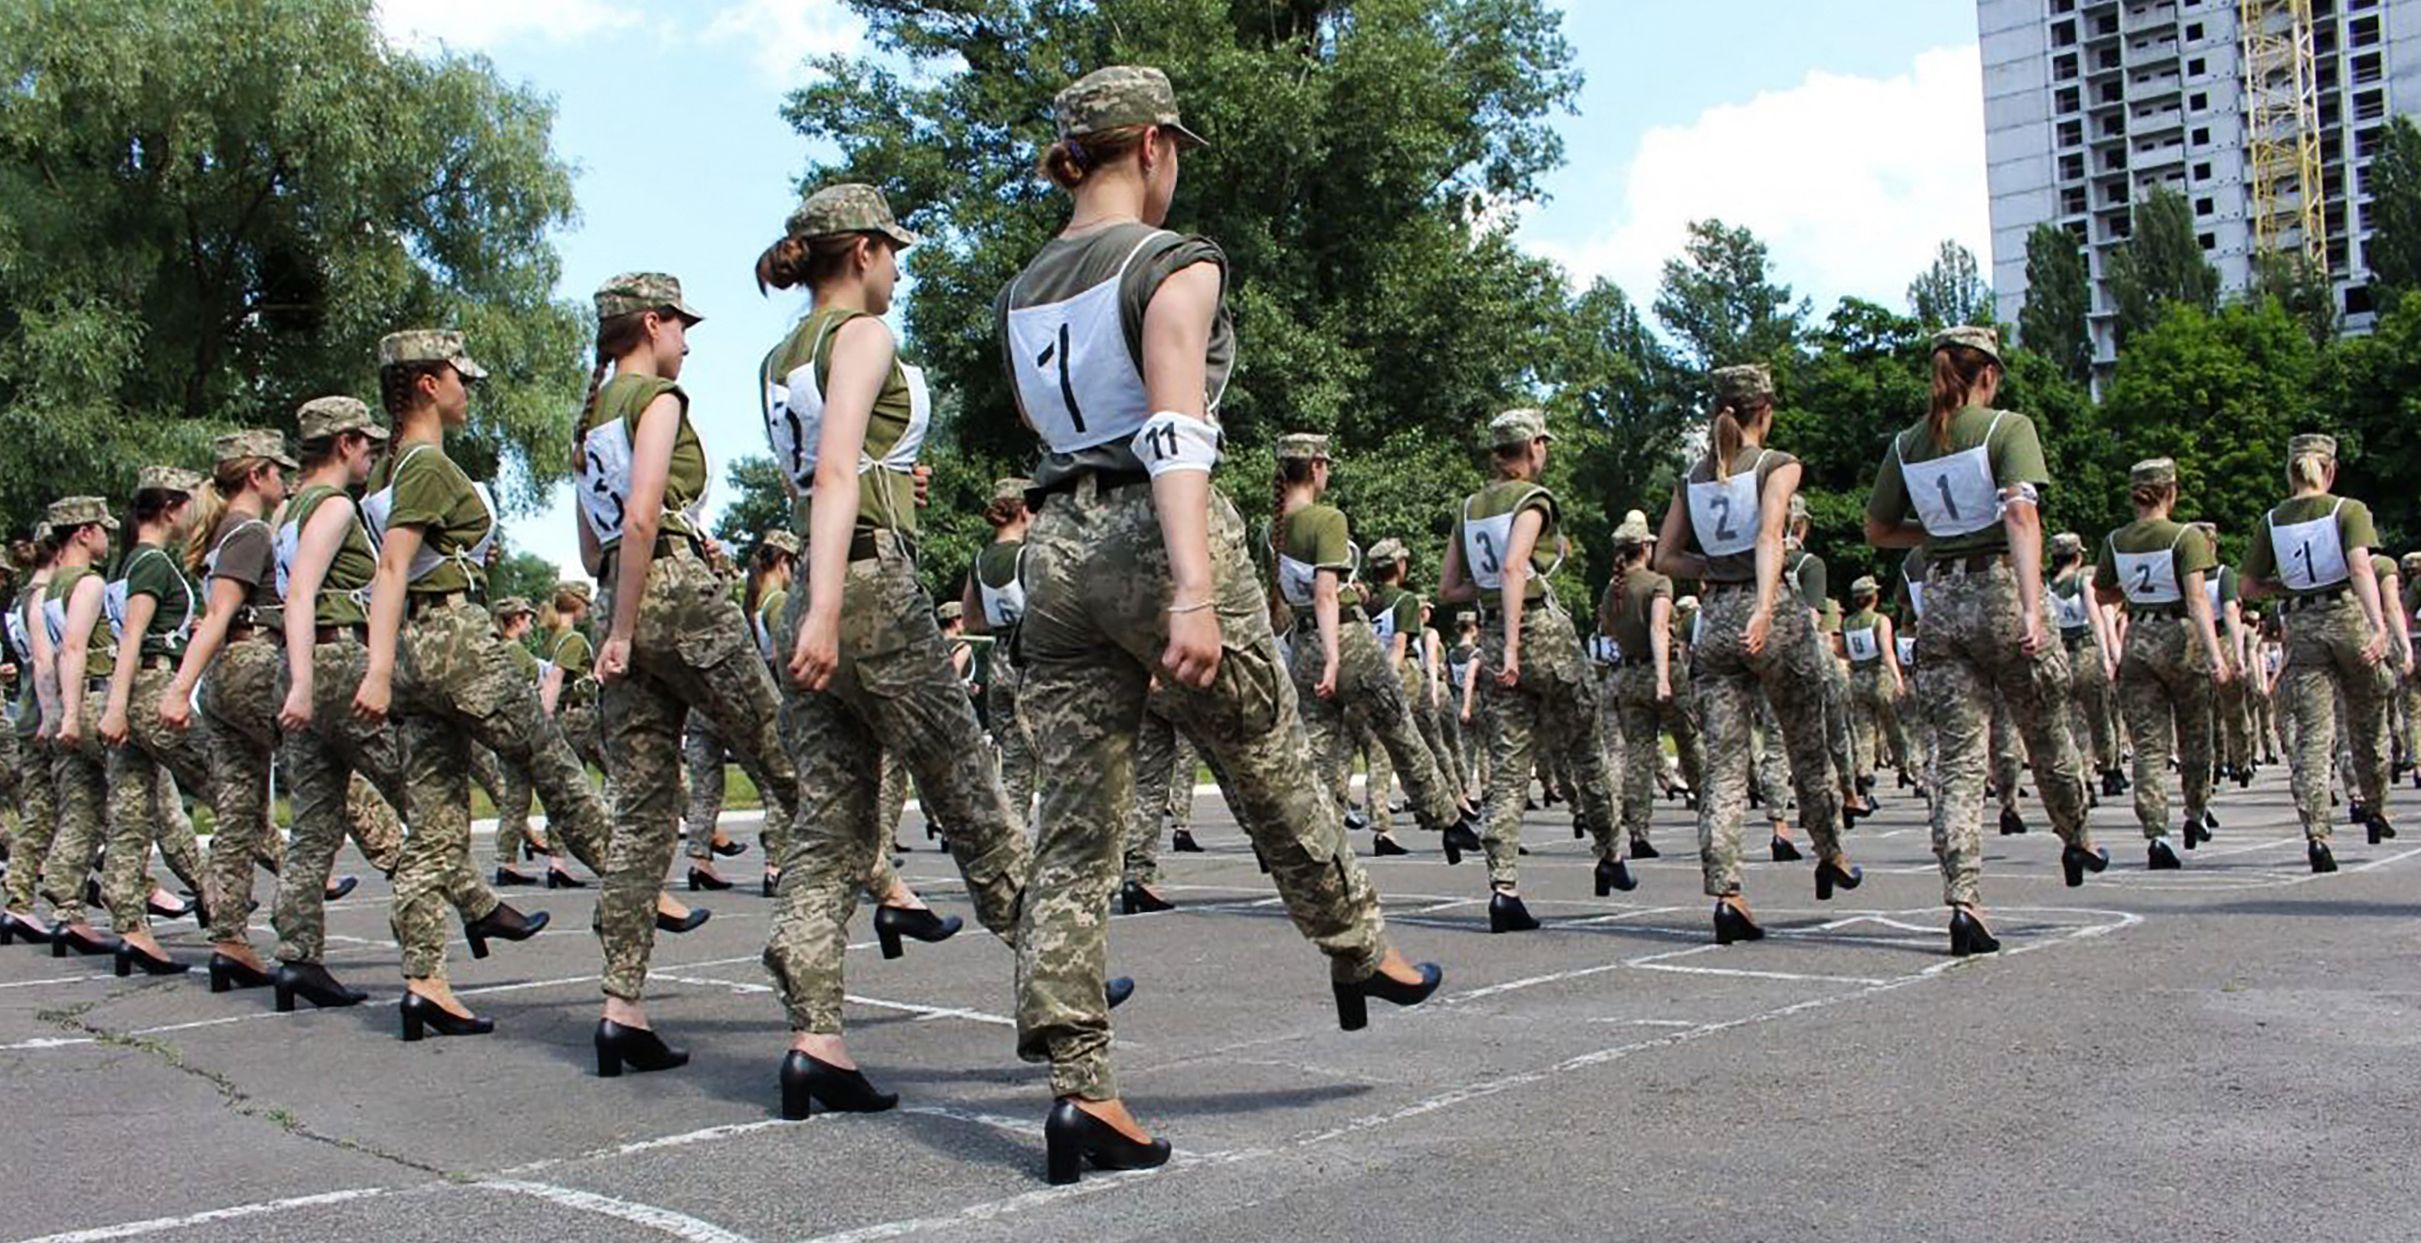 A escolha do calçado gerou uma torrente de críticas nas redes sociais e no parlamento, e levou a acusações de que as mulheres soldados tinham sido sexualizadas. (AFP)